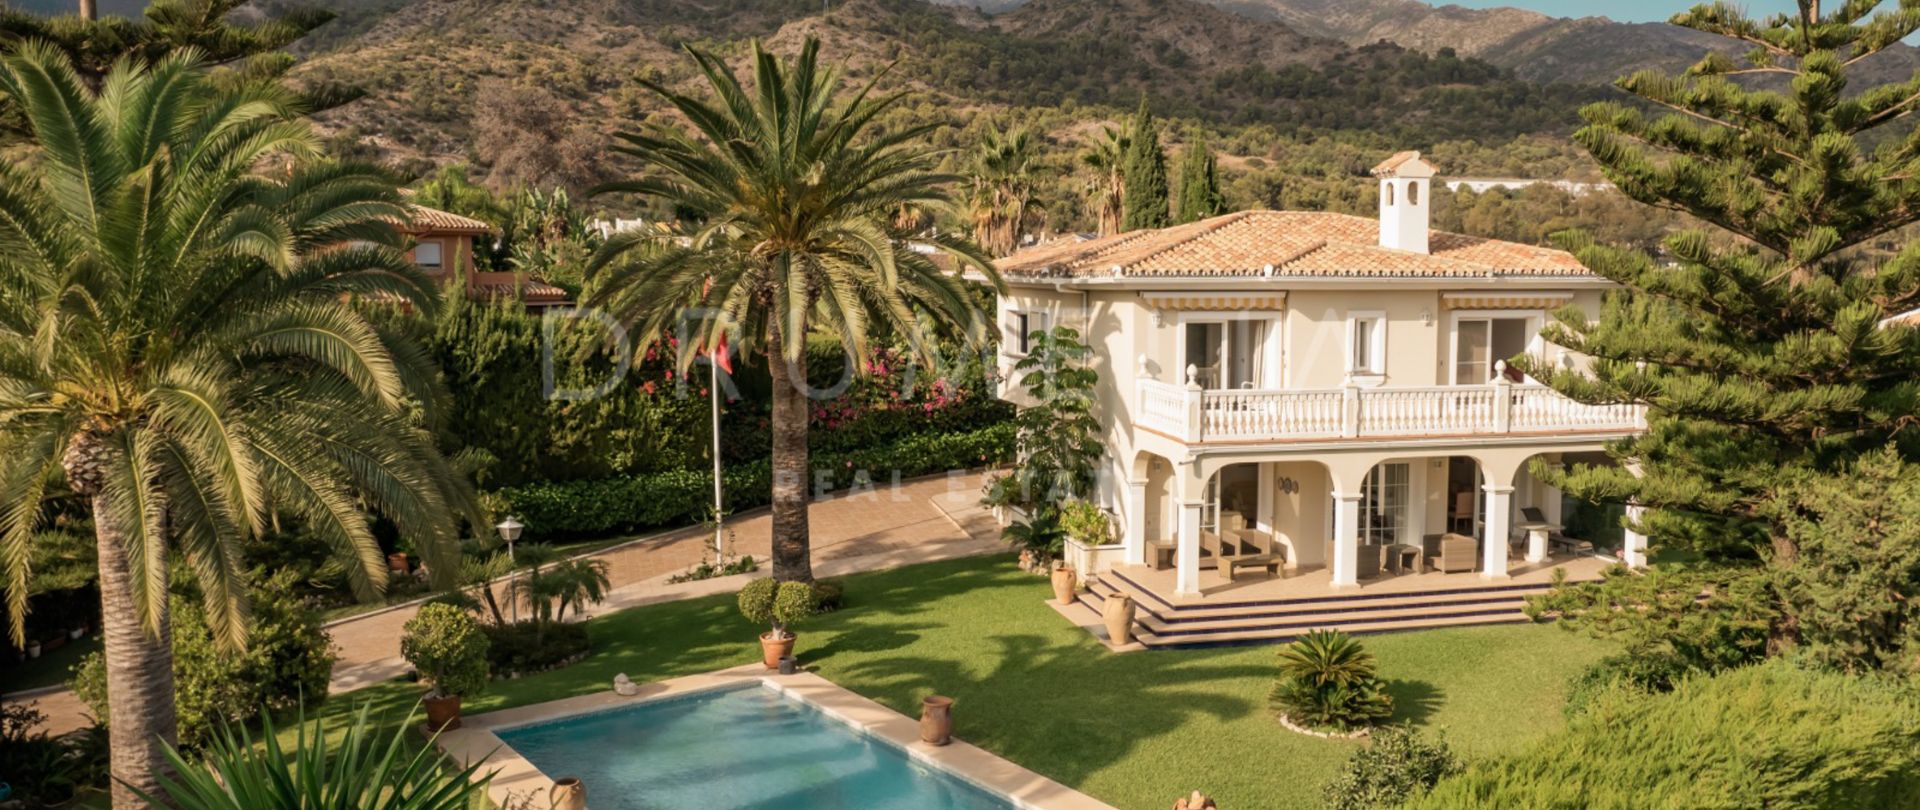 Elegante High-End-Villa im mediterranen Stil im schönen Marbella